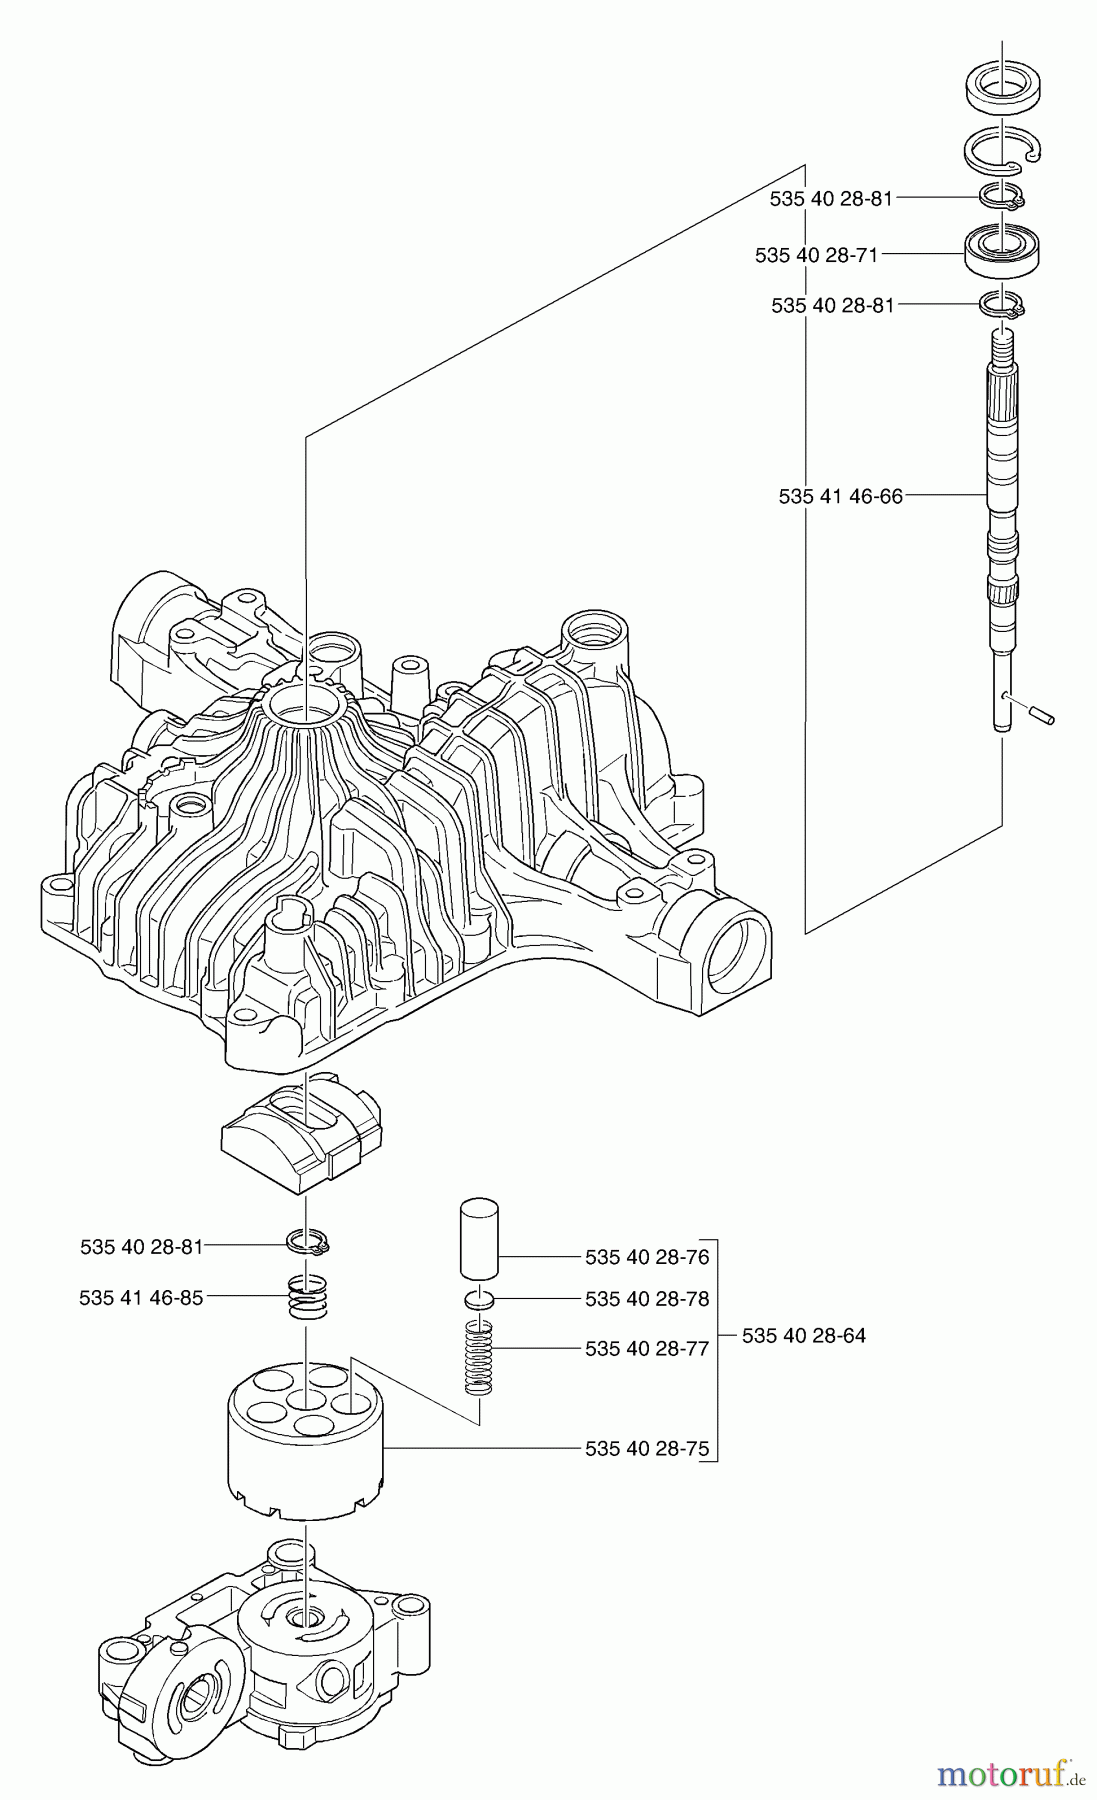  Husqvarna Motoren K 66 - Tuff Torq Transmission (2002-06 & After) Pump Shaft